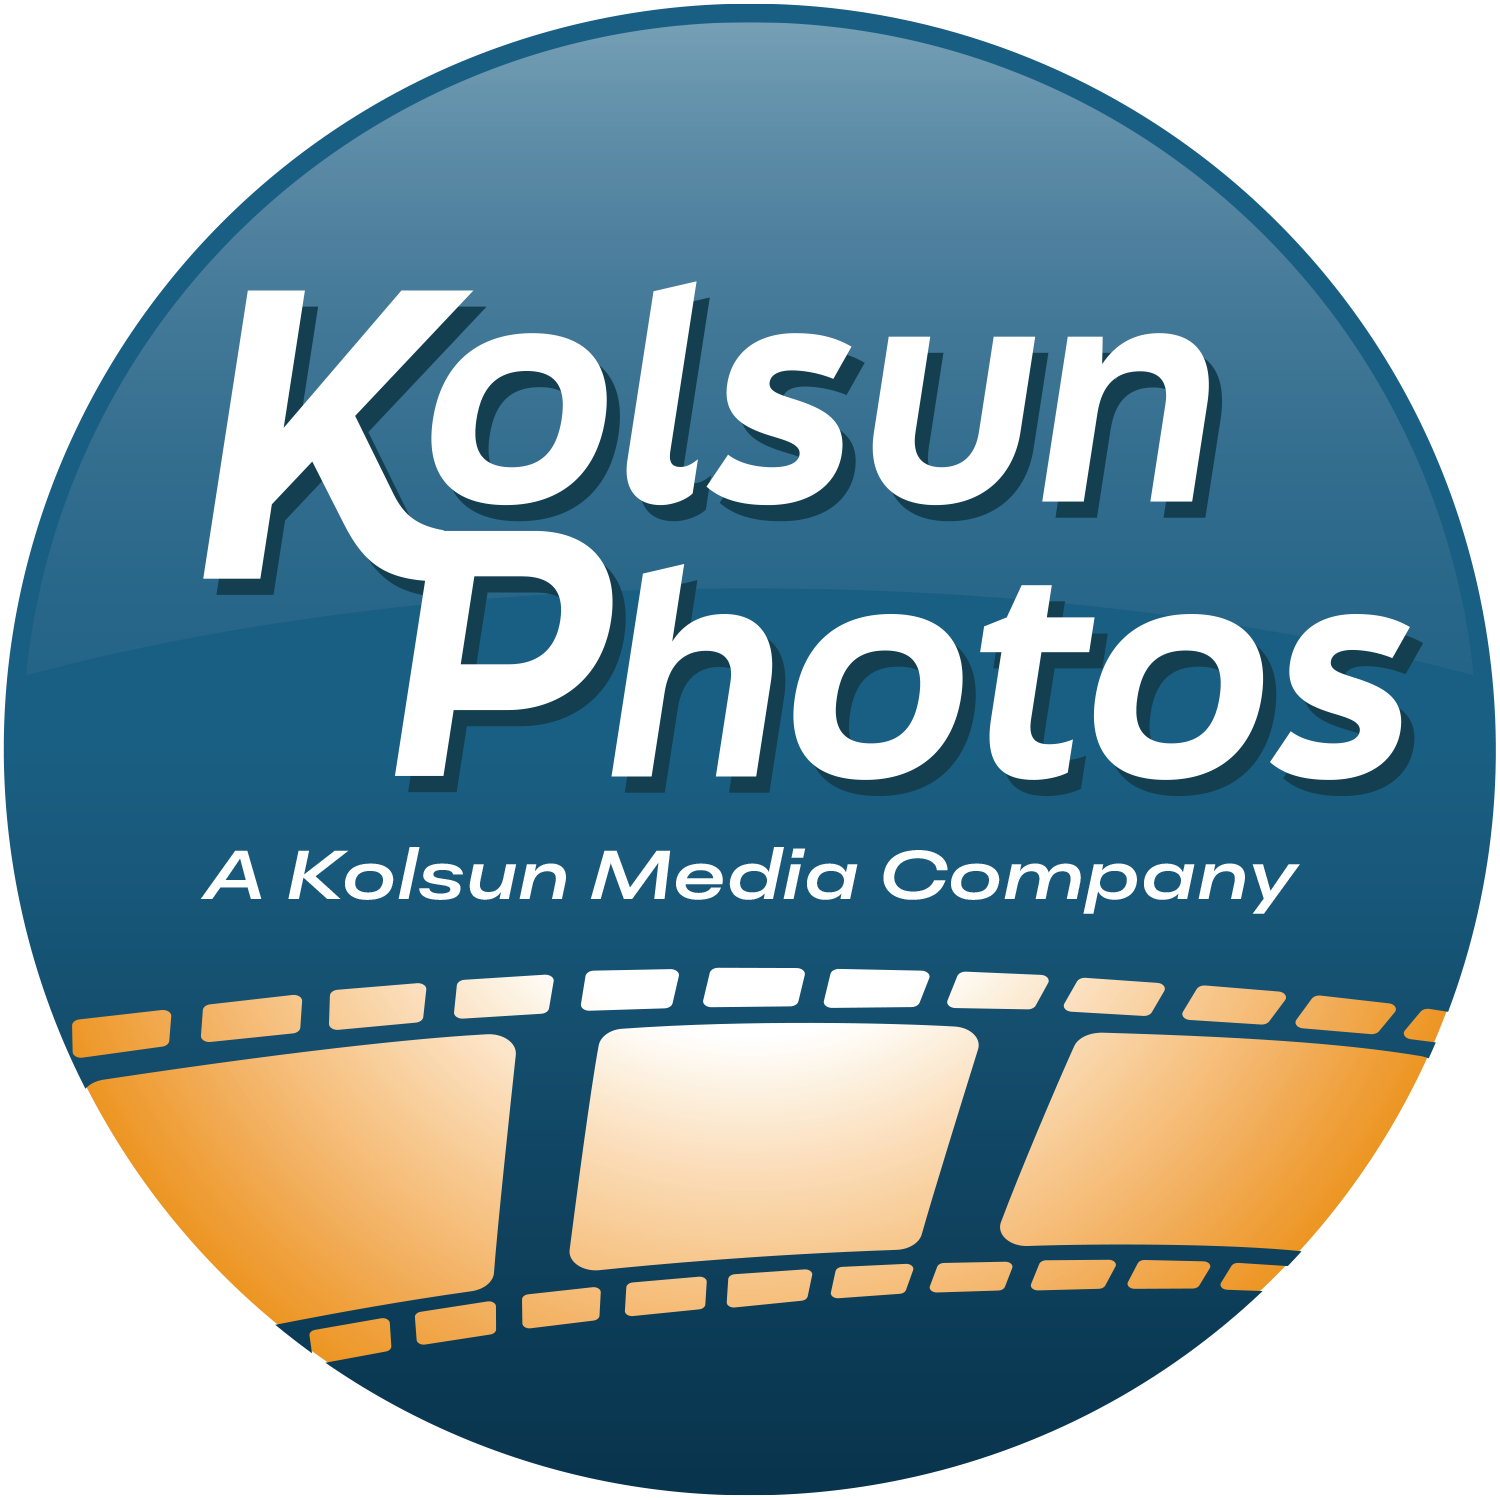 Kolsun Photos